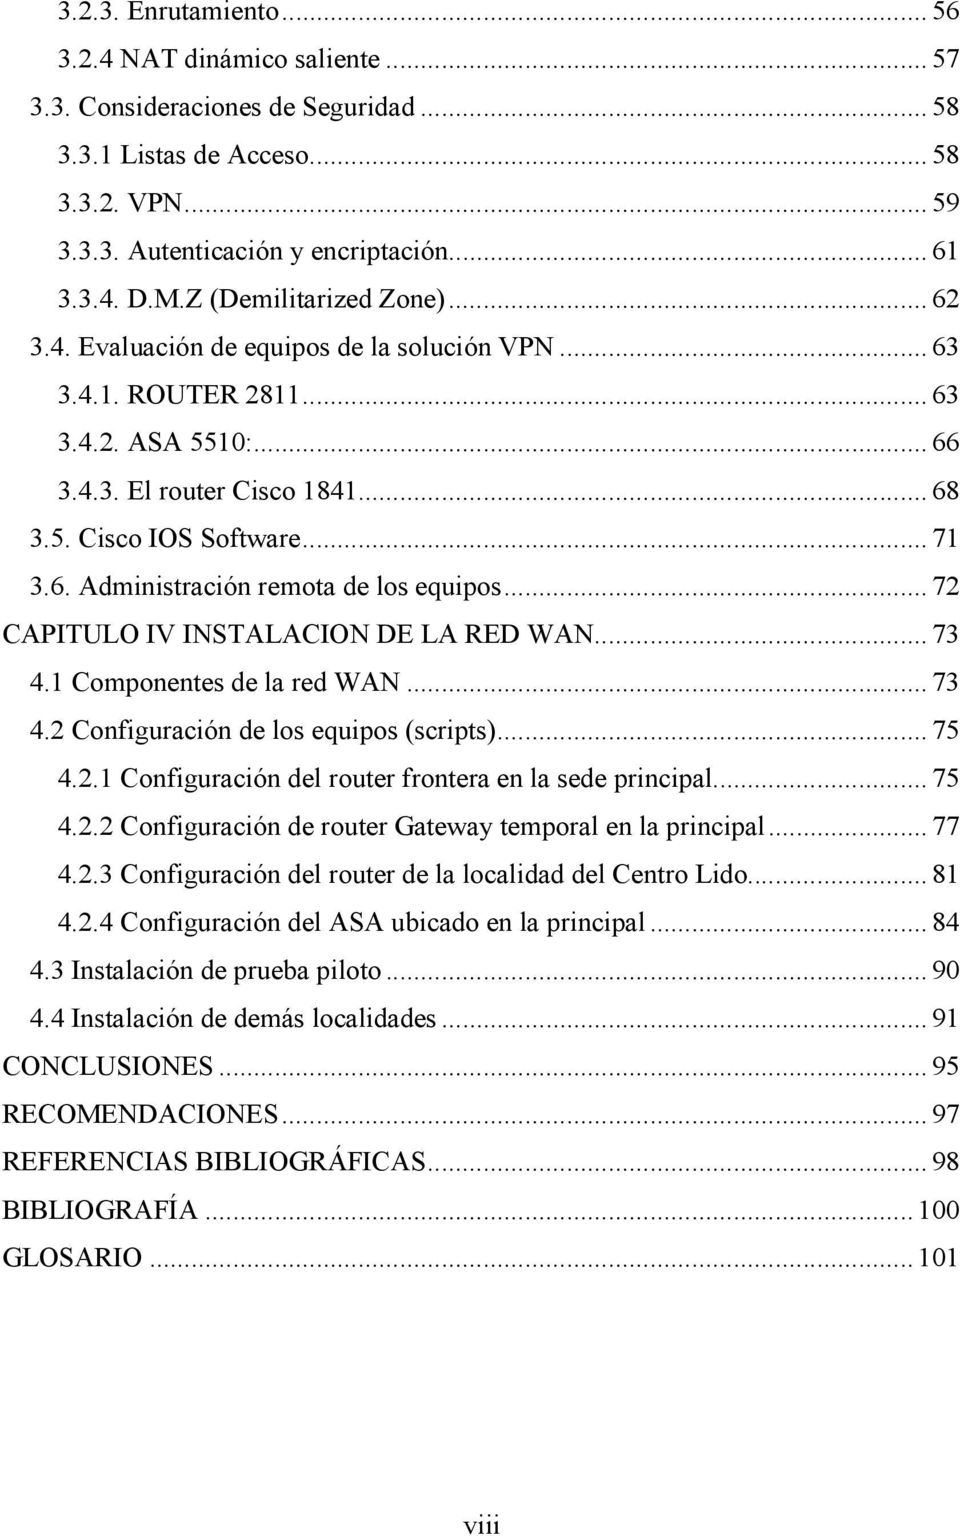 .. 72 CAPITULO IV INSTALACION DE LA RED WAN... 73 4.1 Componentes de la red WAN... 73 4.2 Configuración de los equipos (scripts)... 75 4.2.1 Configuración del router frontera en la sede principal.